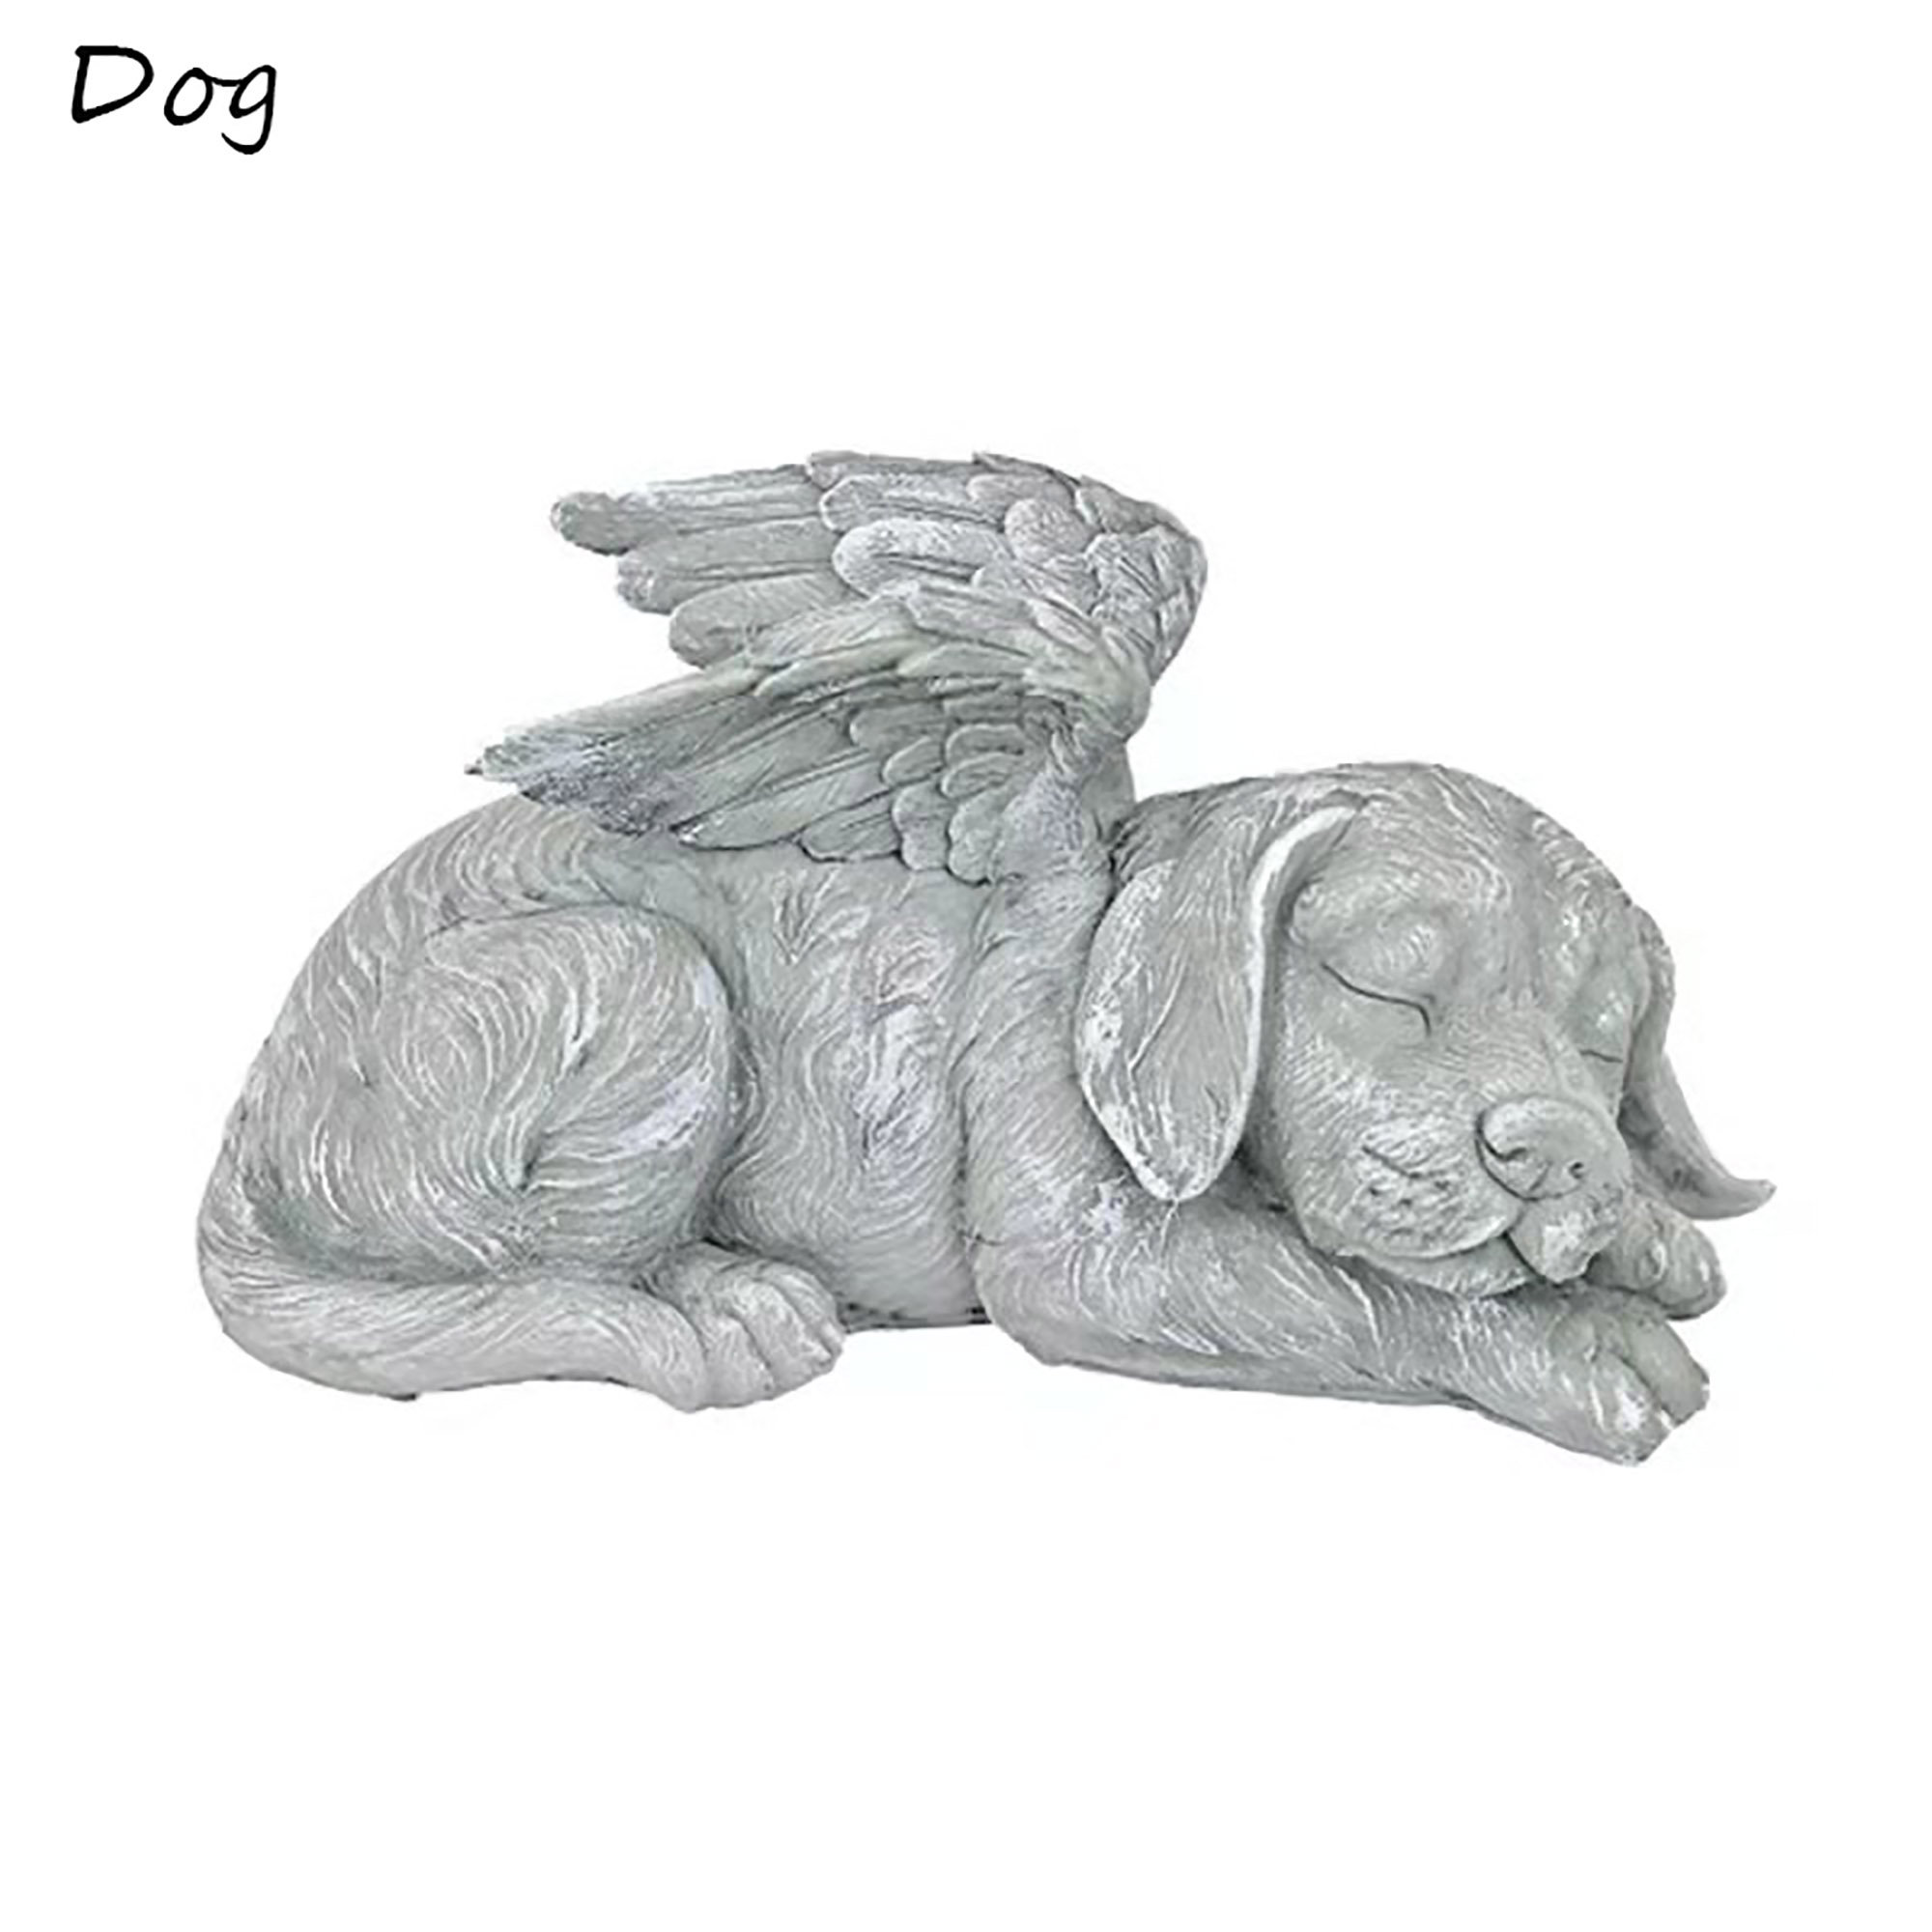 ❤ Garden Angel Dog Statue